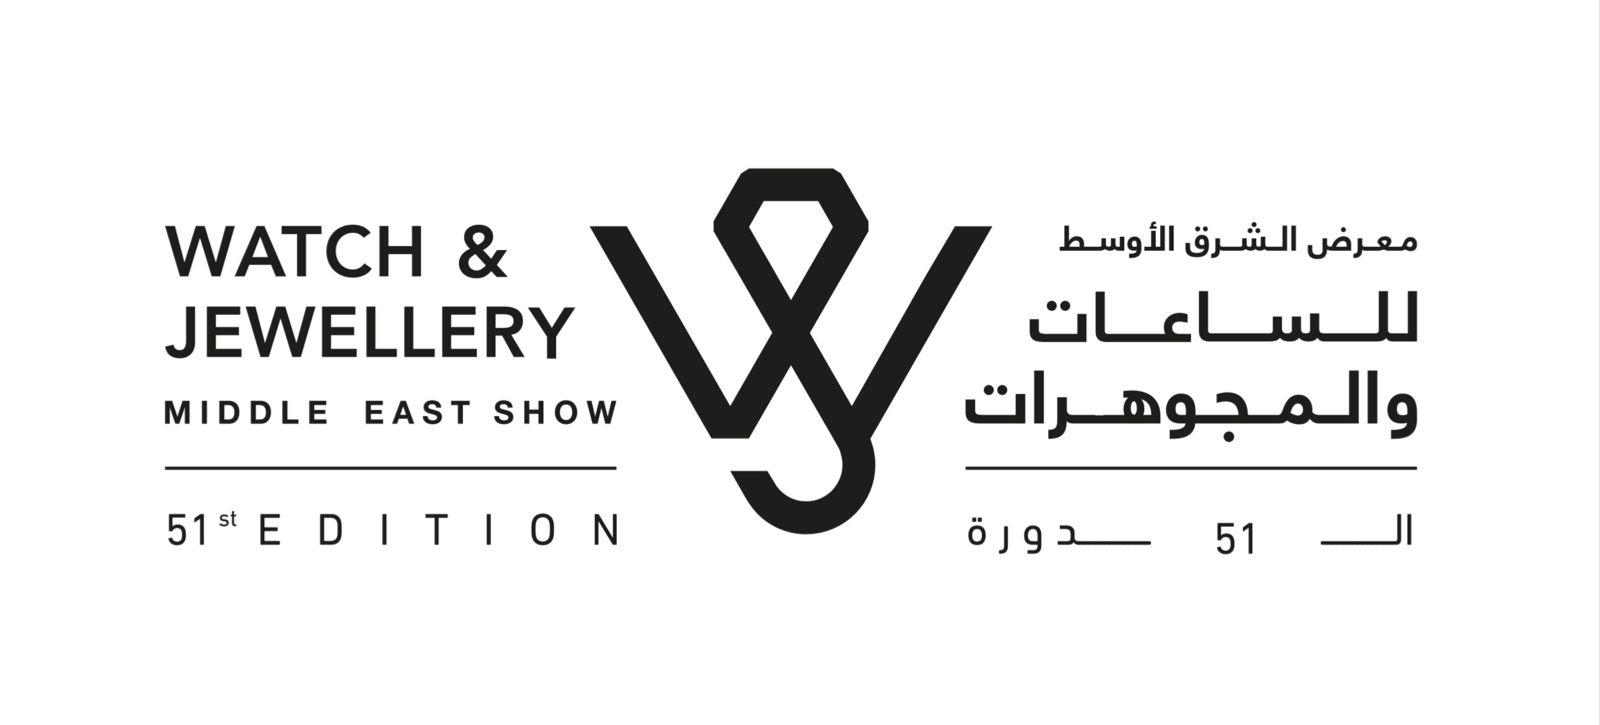 Watch jewellery show logo